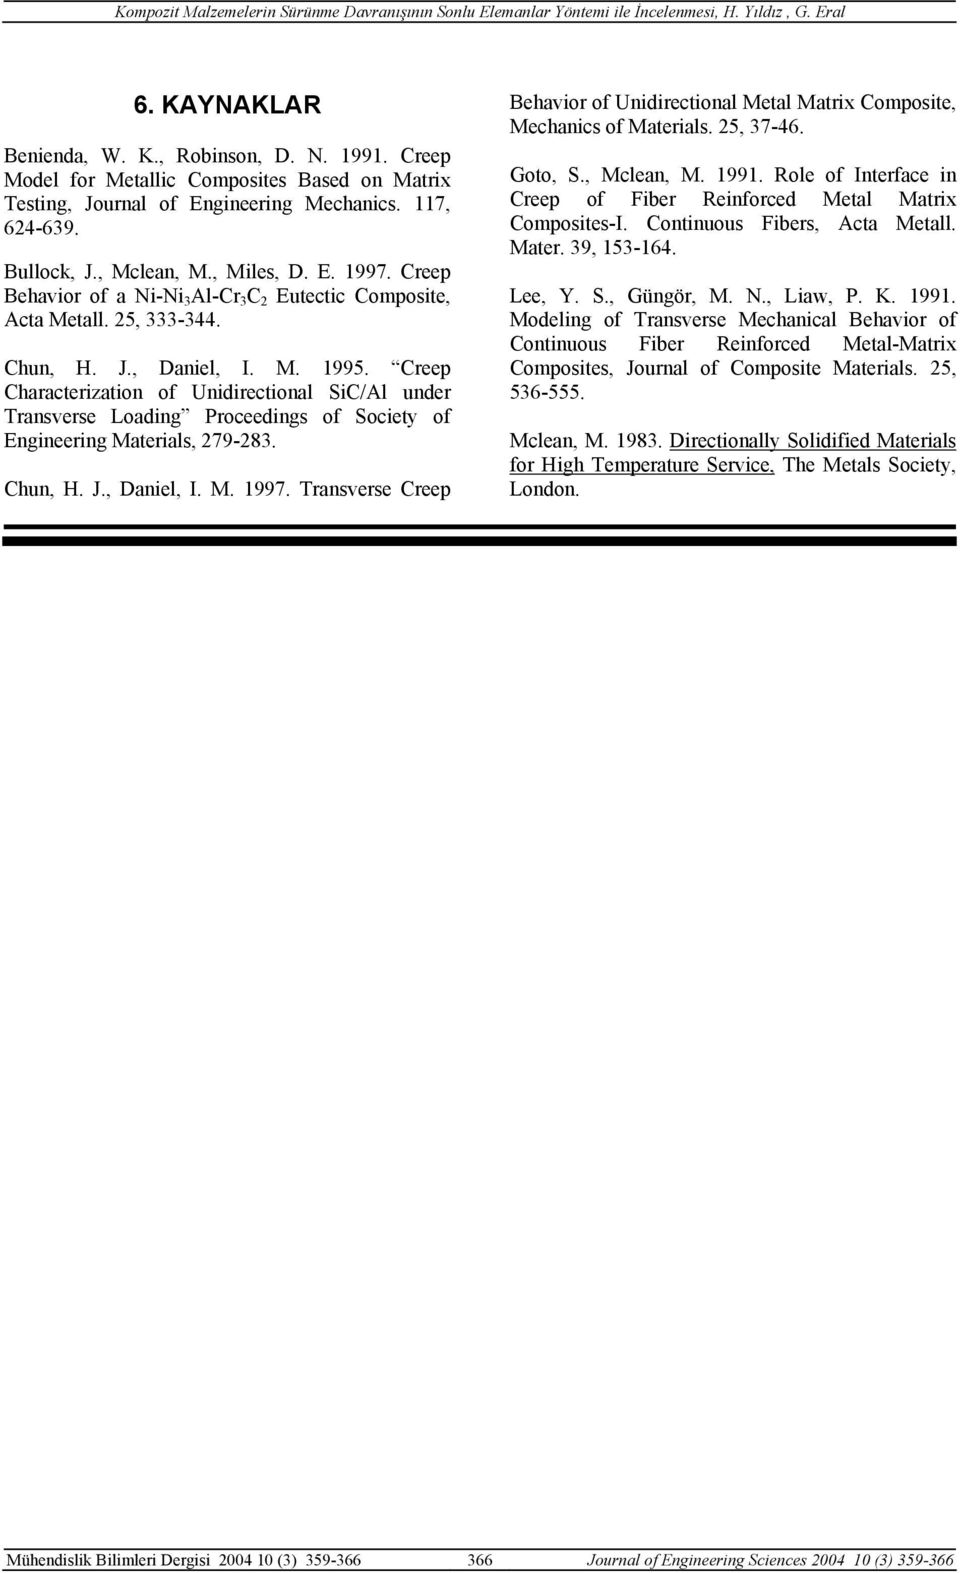 reep haracterizatio of Uidirectioal Si/Al uder Trasverse Loadig Proceedigs of Society of Egieerig Materials, 279-28. hu, H. J., Daiel, I. M. 997.